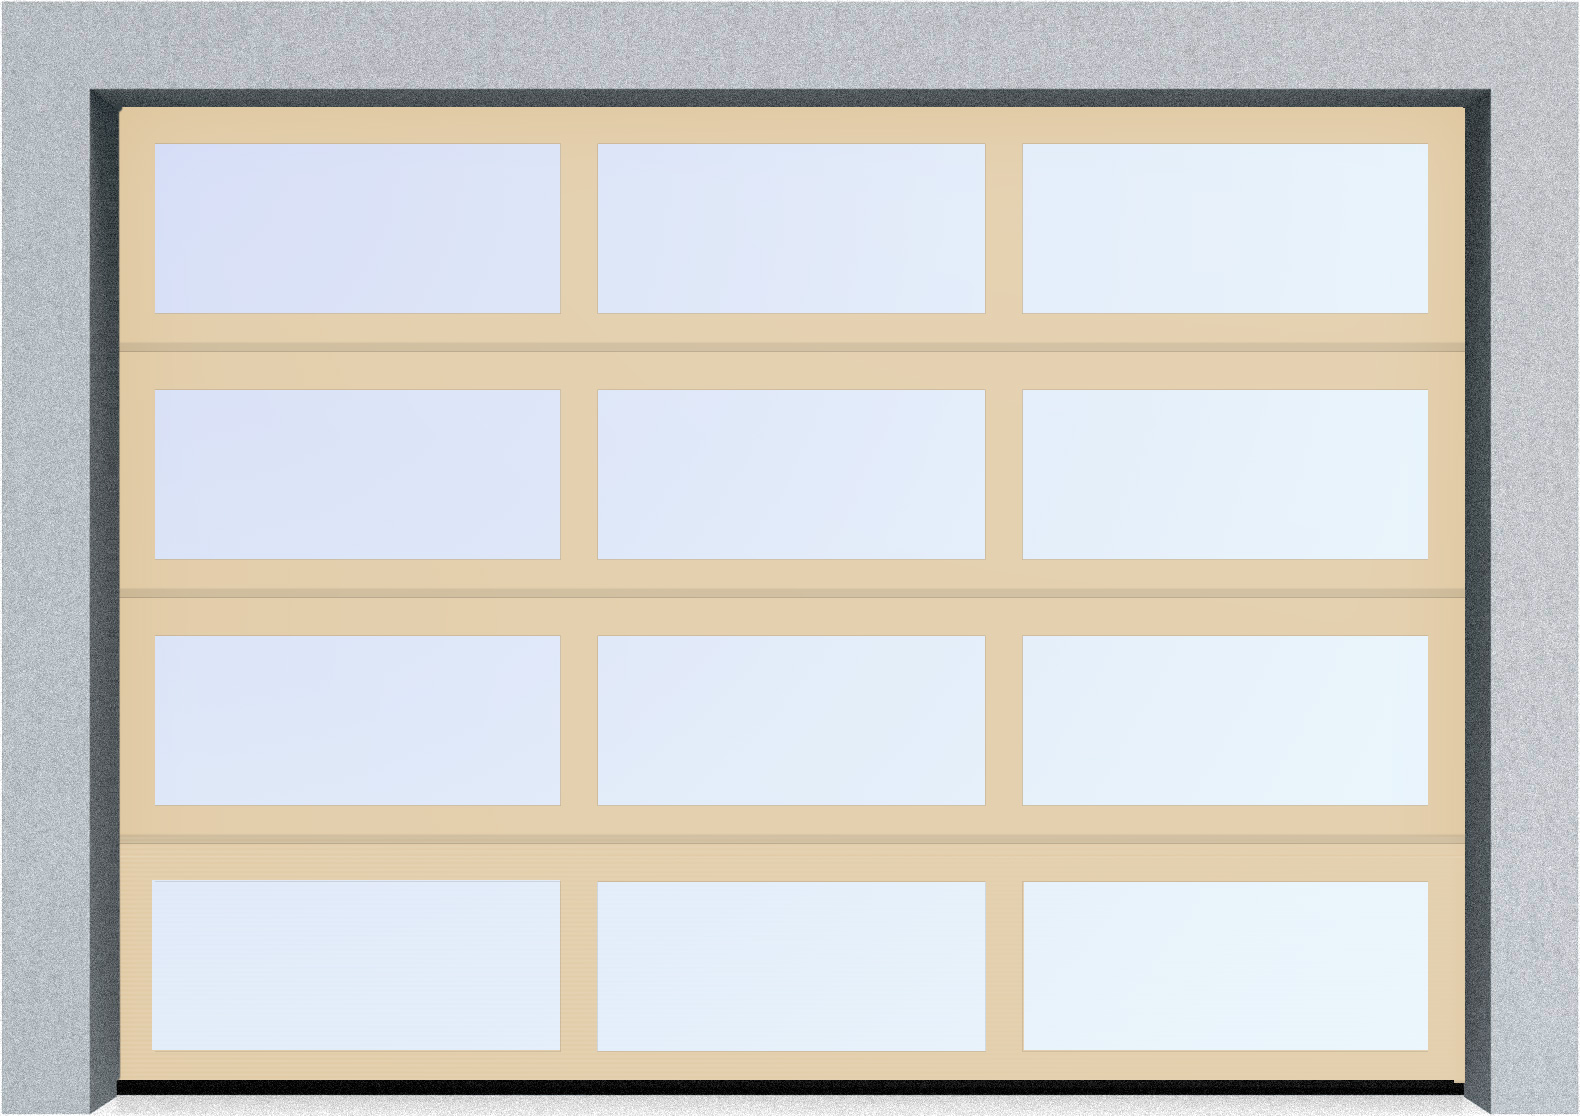  Автоматические секционные панорамные ворота серии AluTrend (АЛП) 3875х4500 стандартные цвета, фото 1 